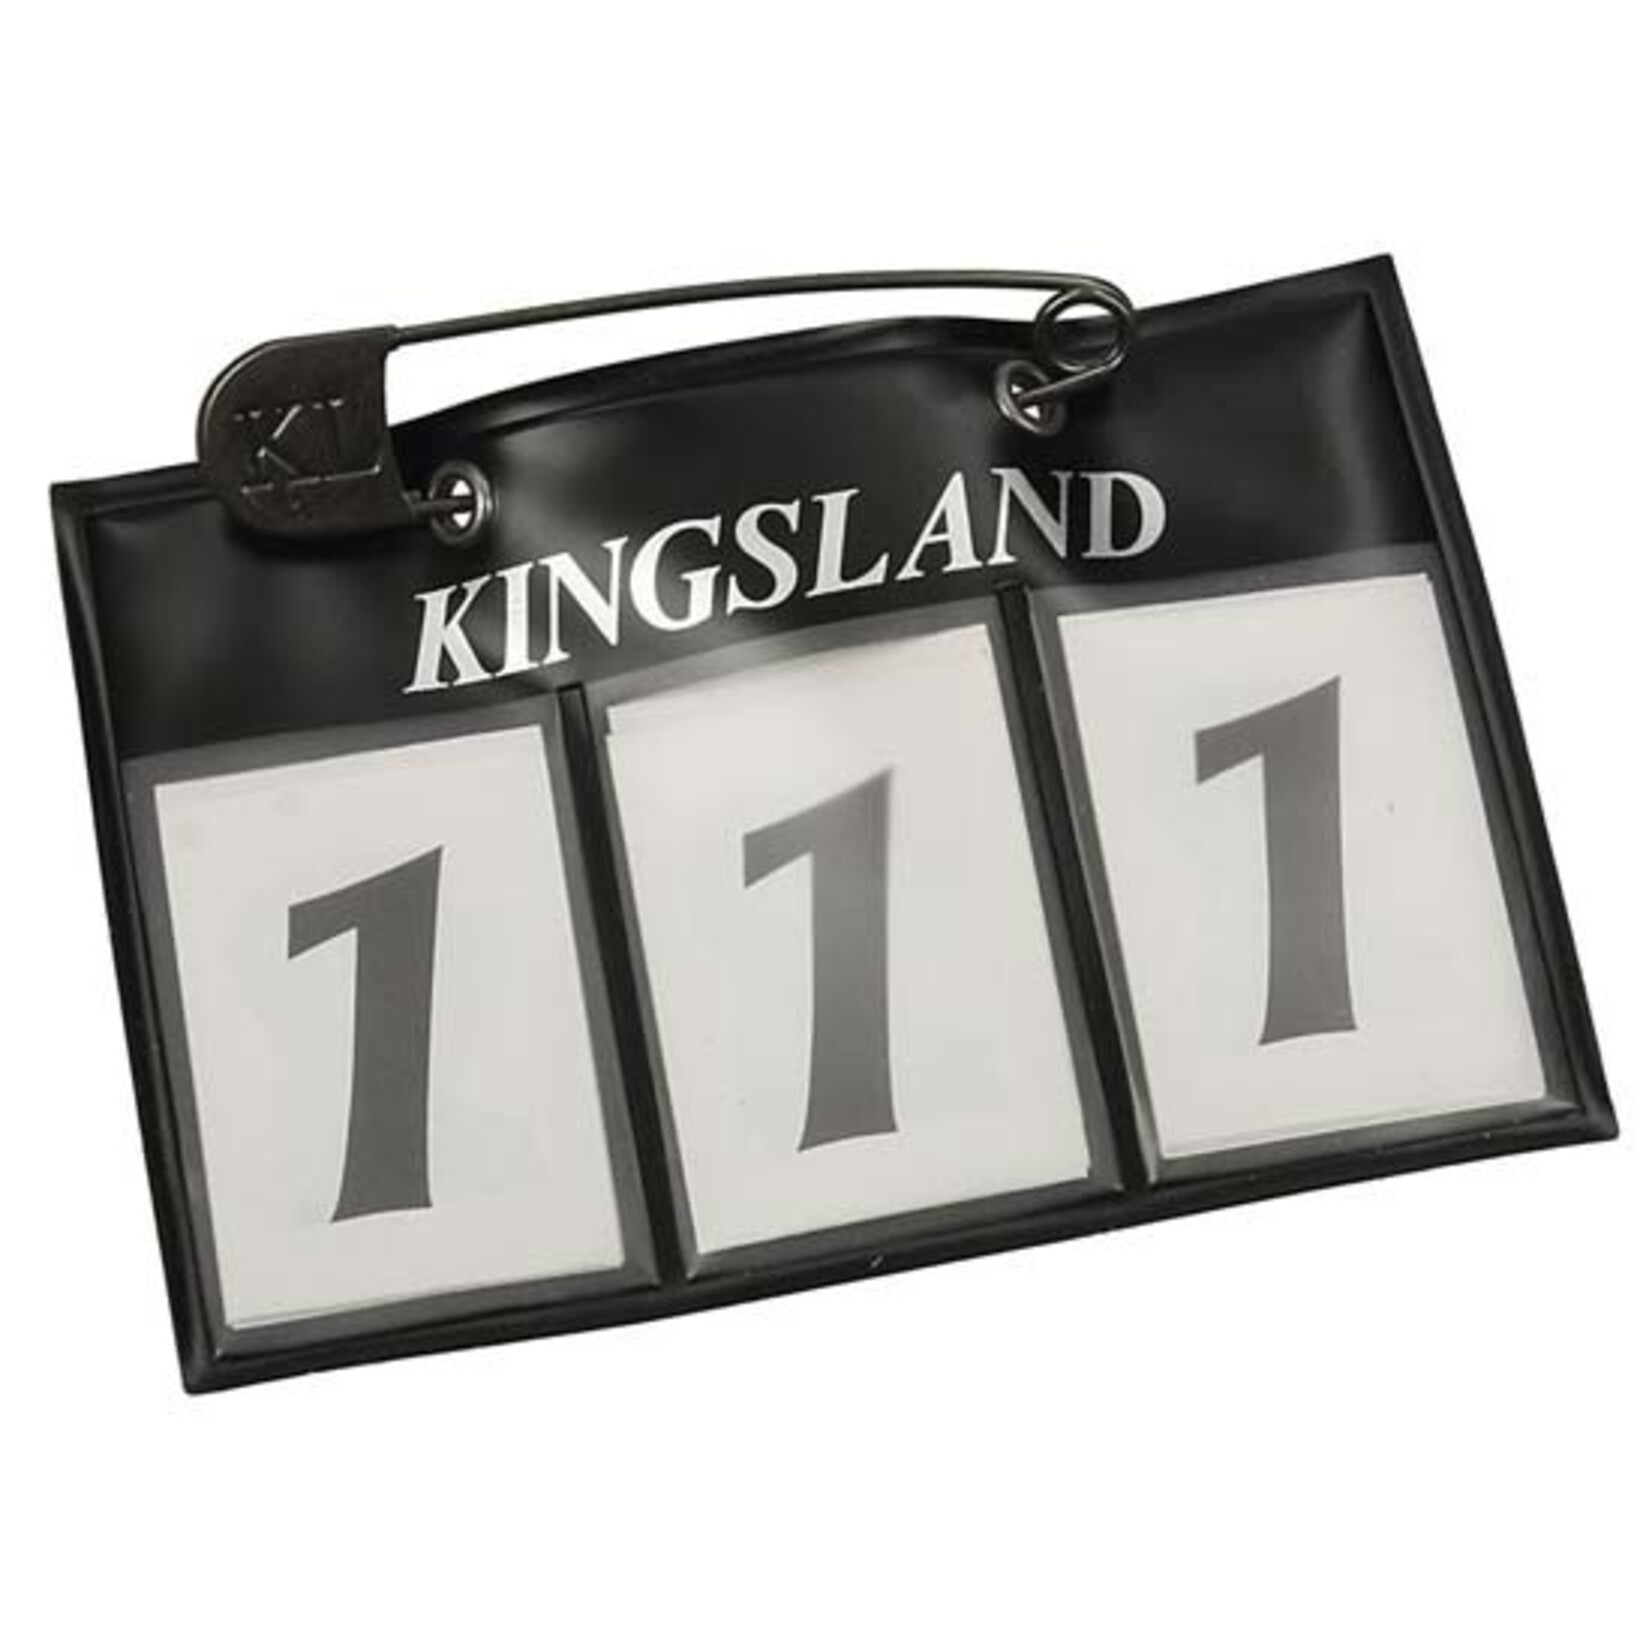 Kingsland KL Classic number plate navy